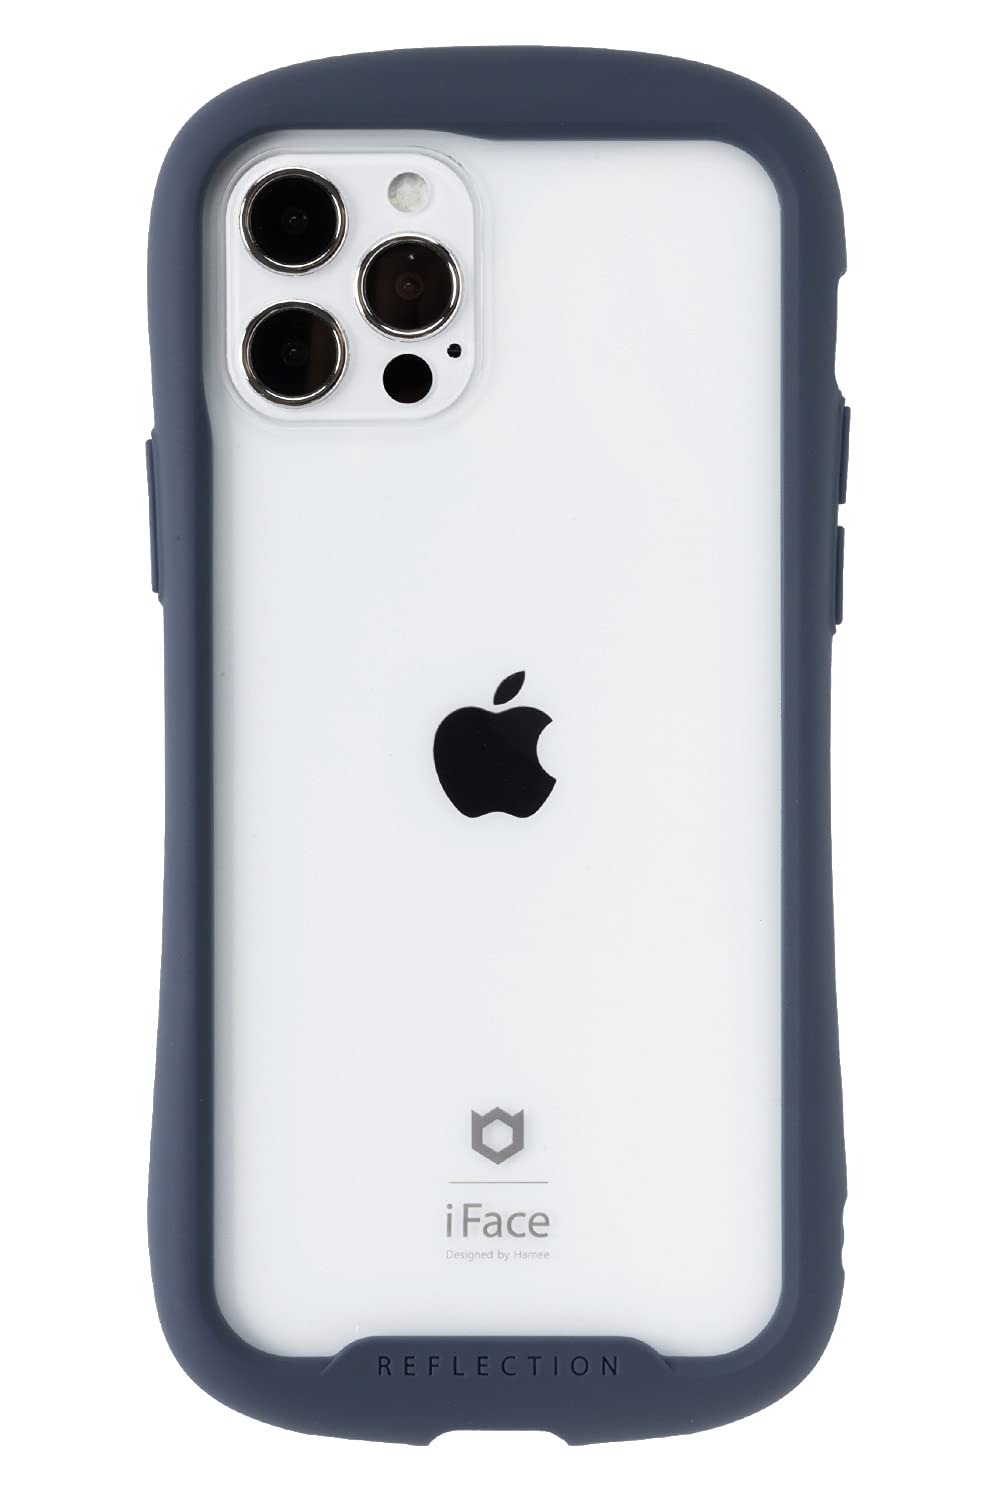 iFace Reflection iPhone 12/12 Pro ケース クリア 強化ガラス (ネイビー)アイフォン12 アイフォン12Pro 透明 カバー 耐衝撃 米国MIL規格取得 ストラップホール付き